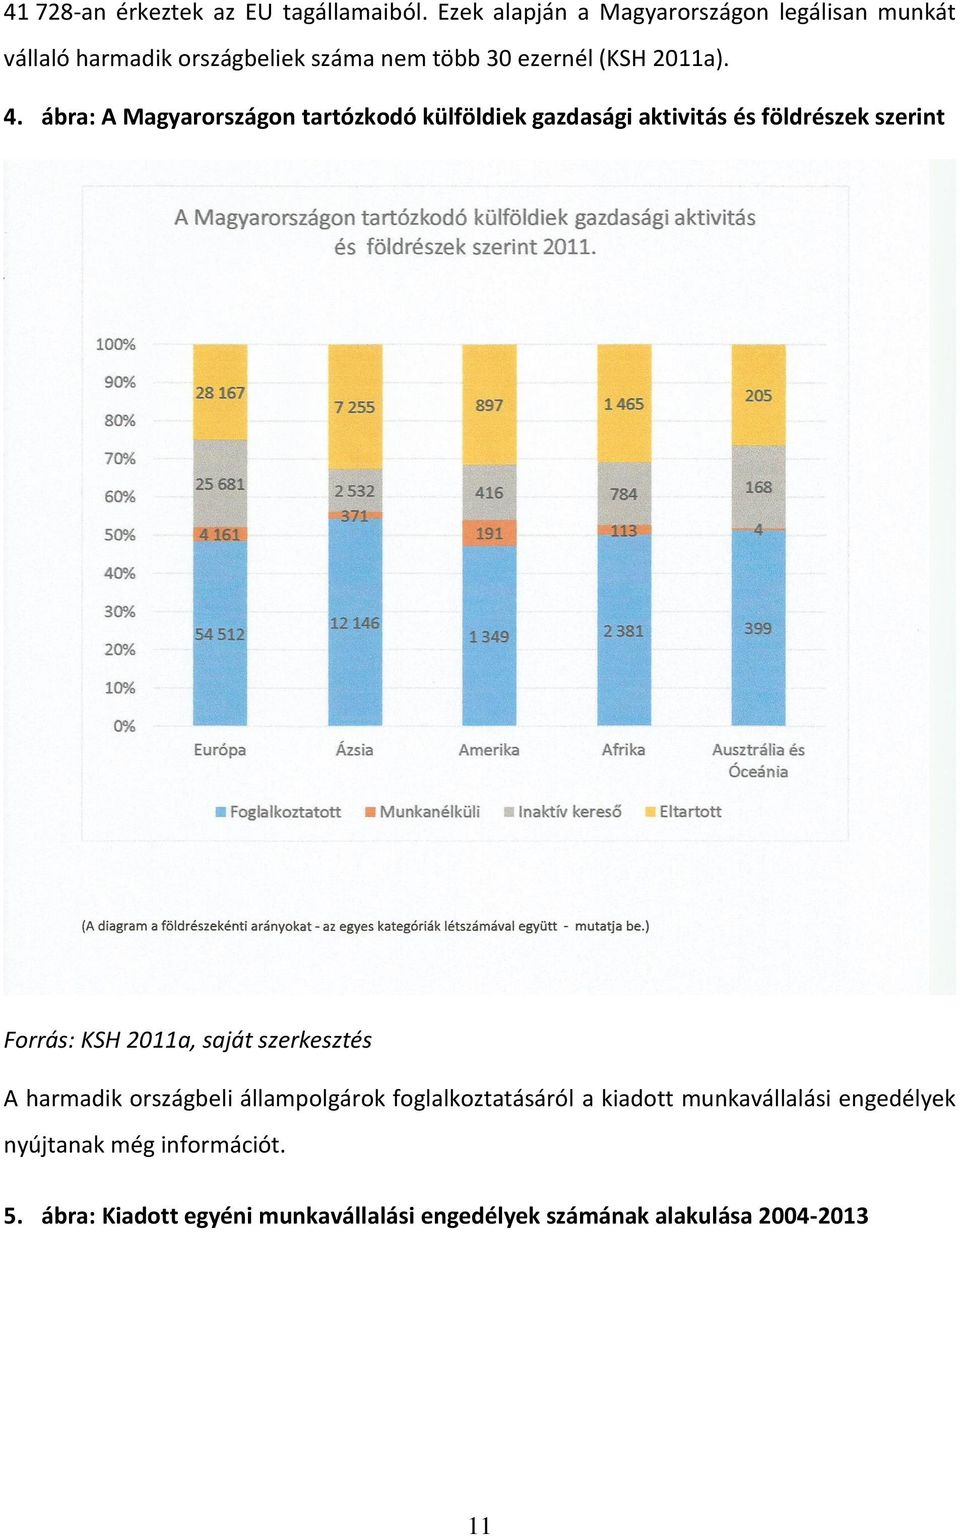 ábra: A Magyarországon tartózkodó külföldiek gazdasági aktivitás és földrészek szerint Forrás: KSH 2011a, saját